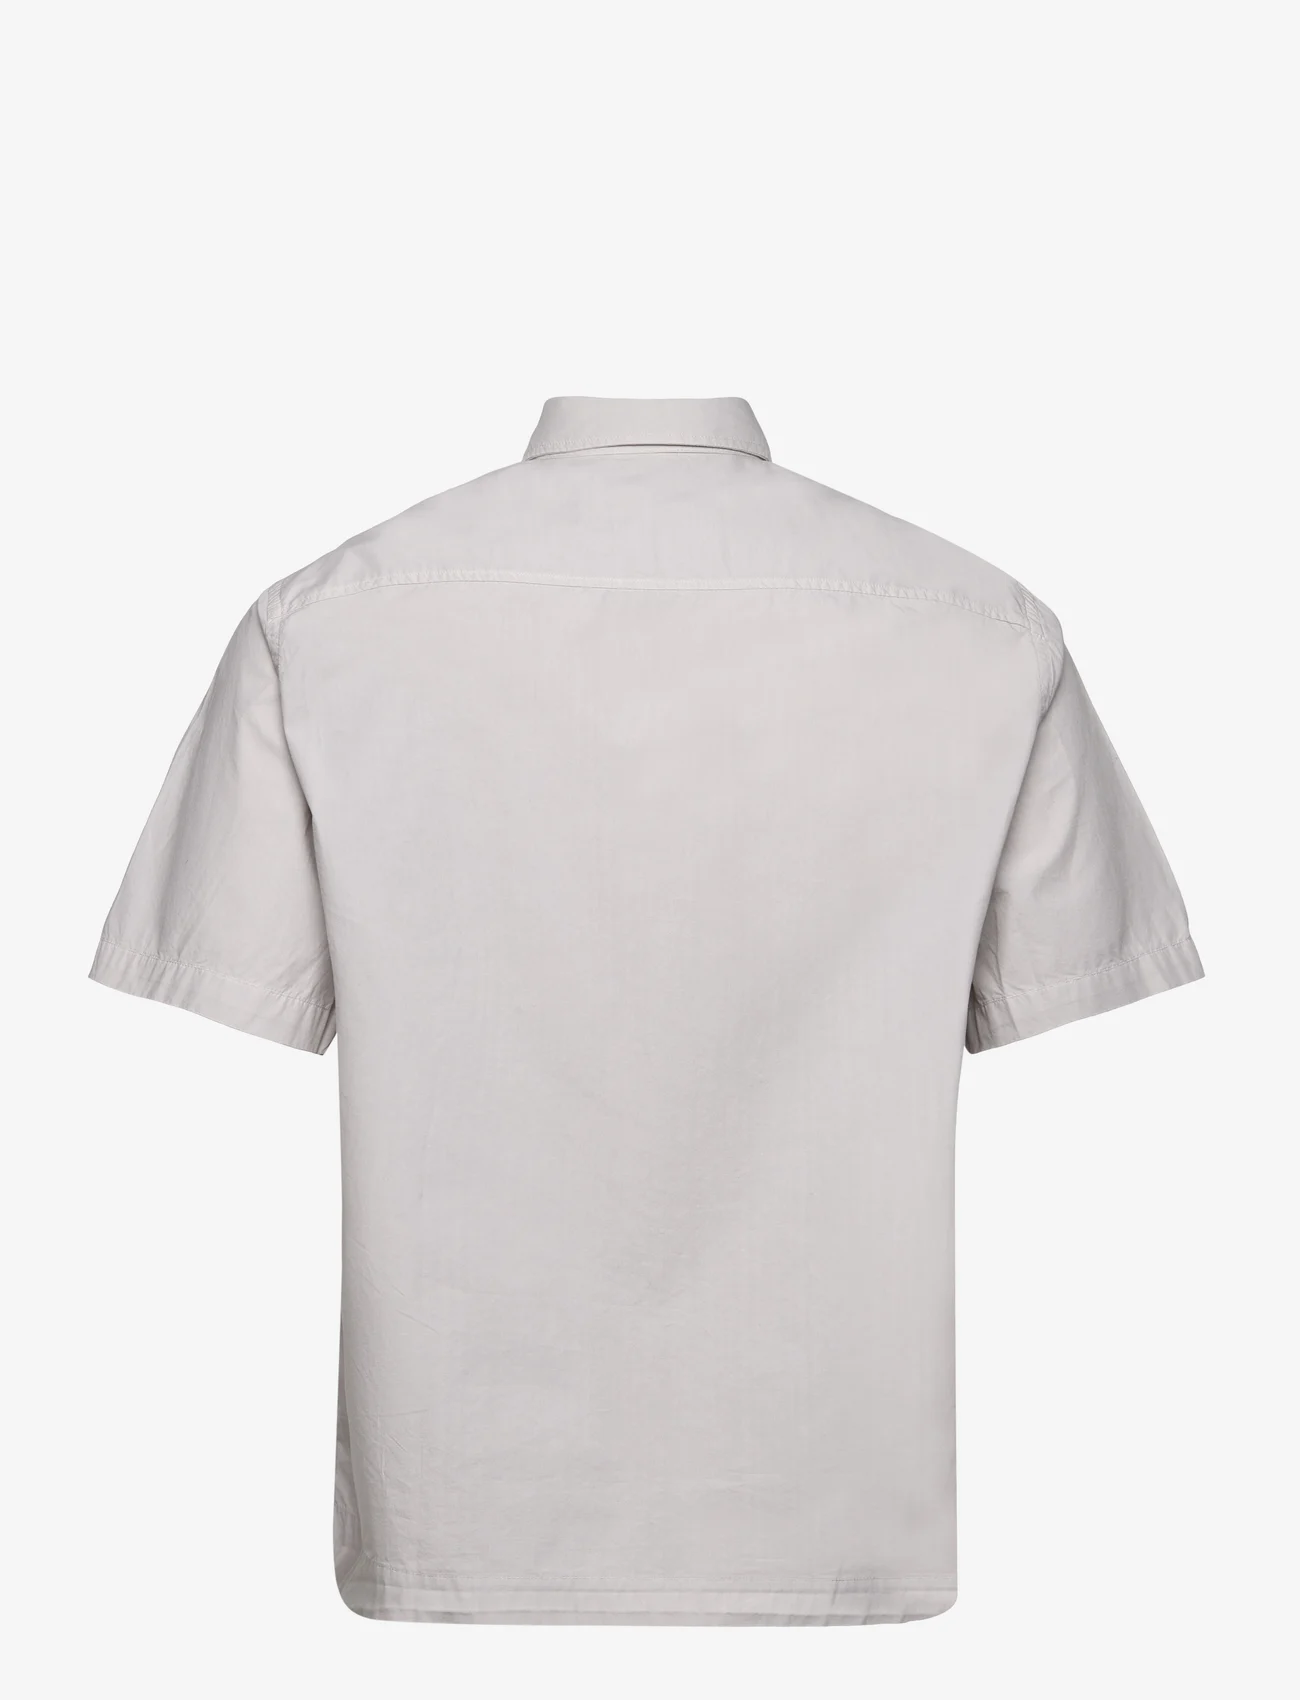 Garment Project - Short Sleeved Shirt - Bone White - short-sleeved shirts - bone white - 1